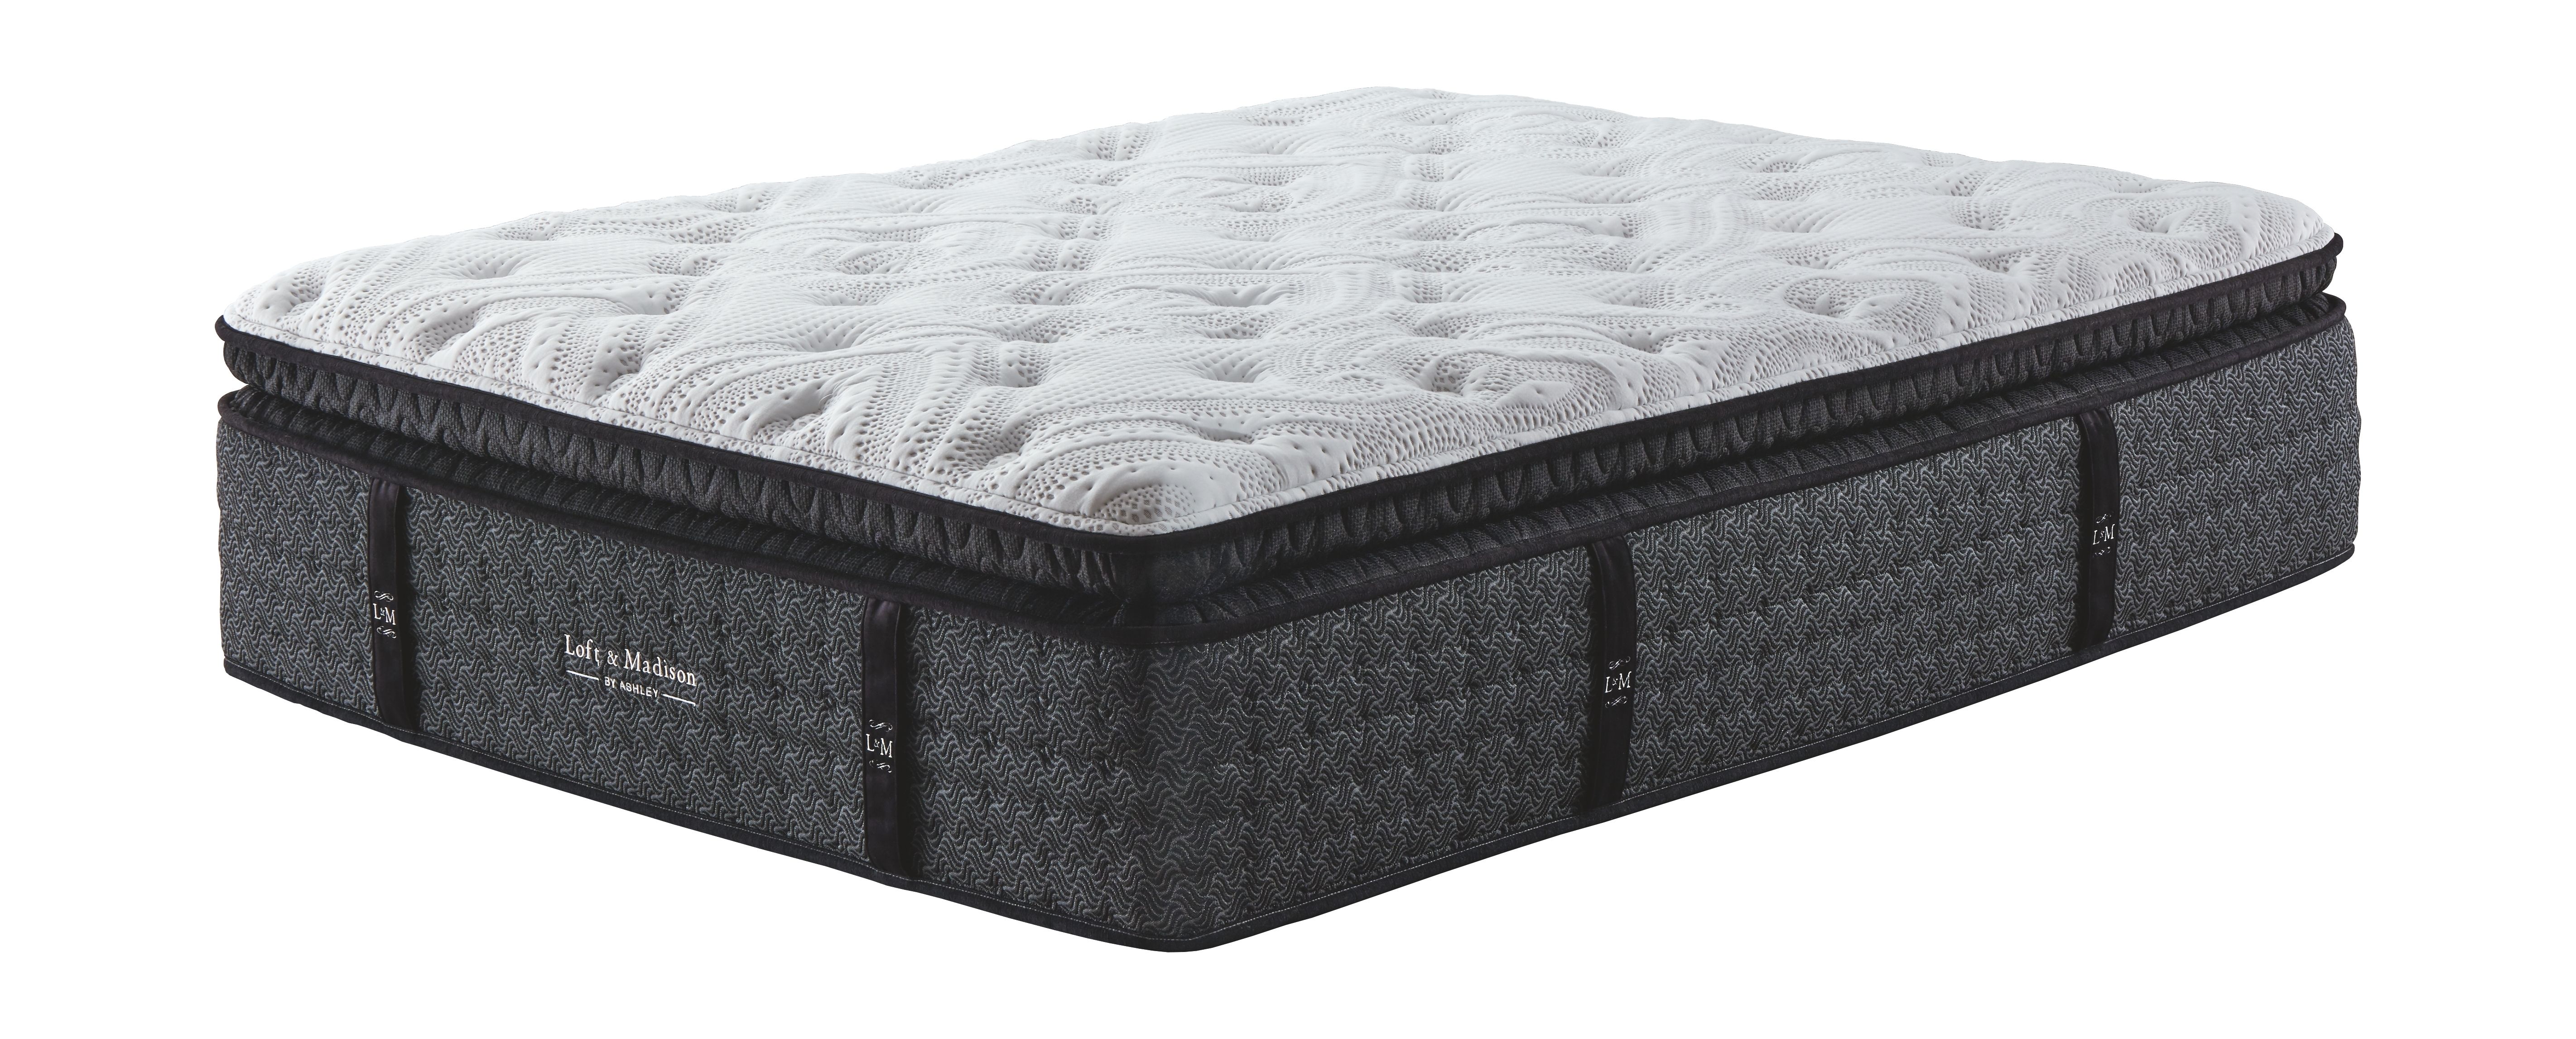 ultra plush mattress sale